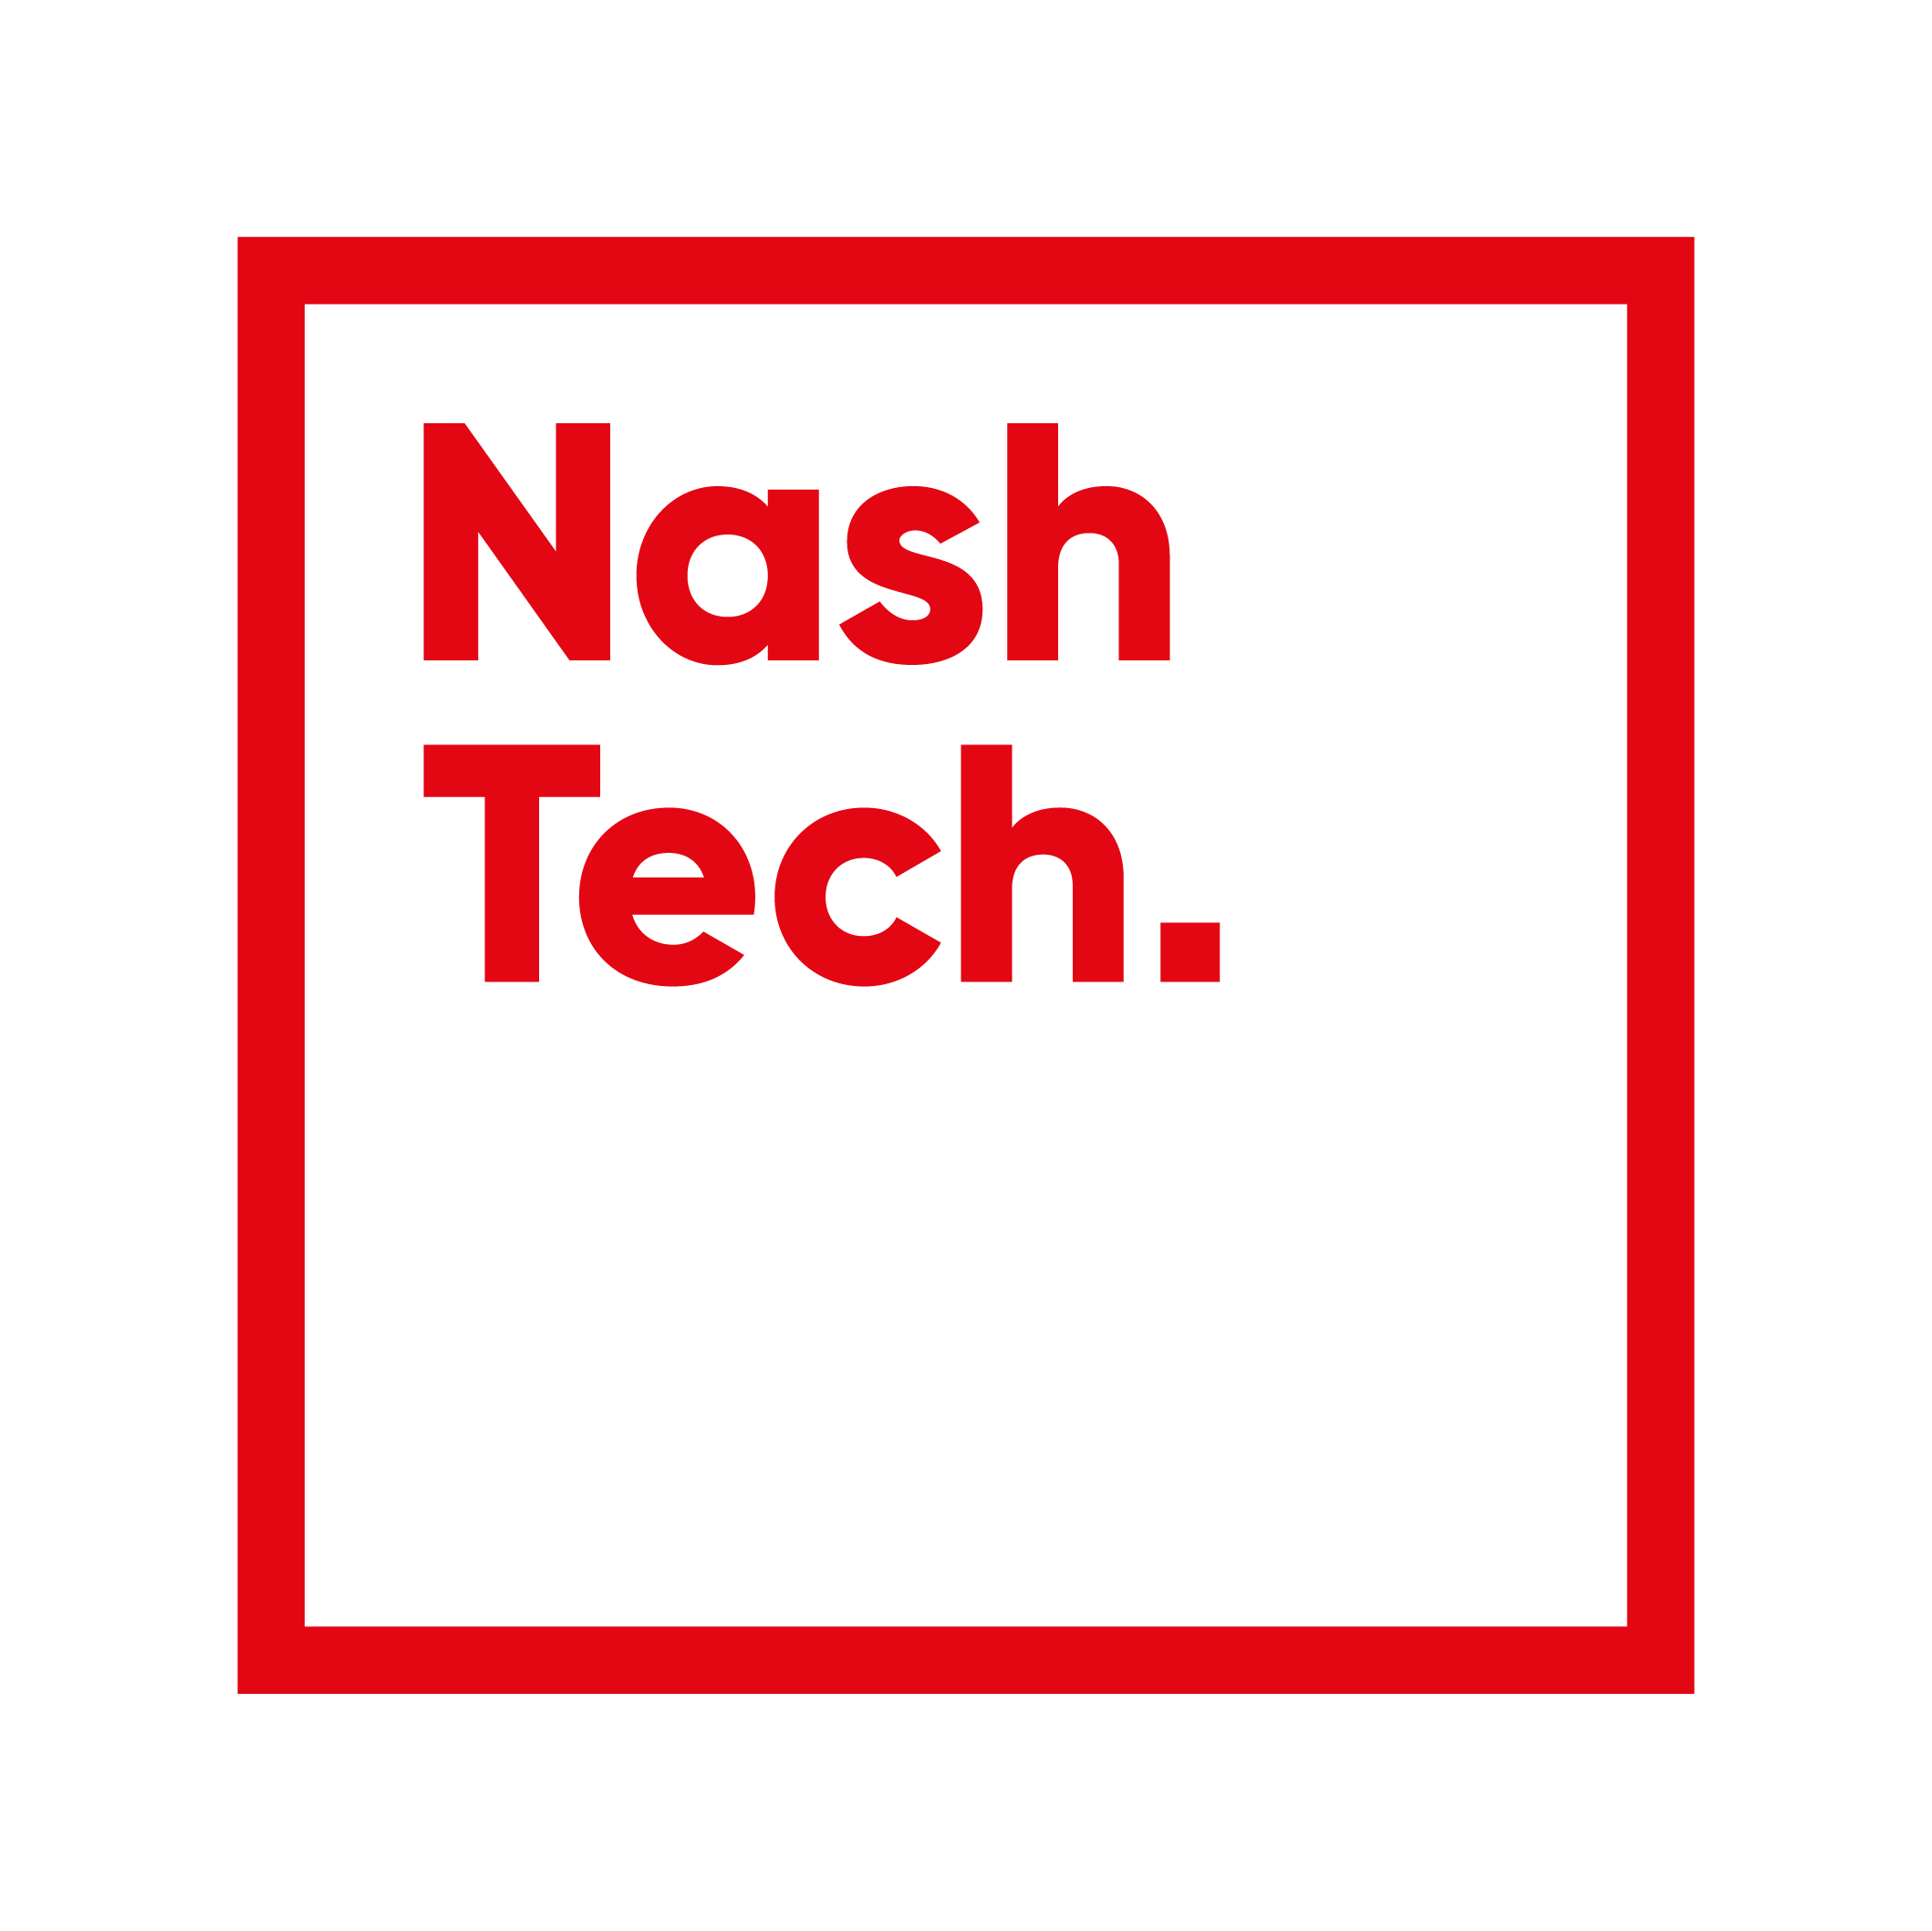 NashTech Vietnam